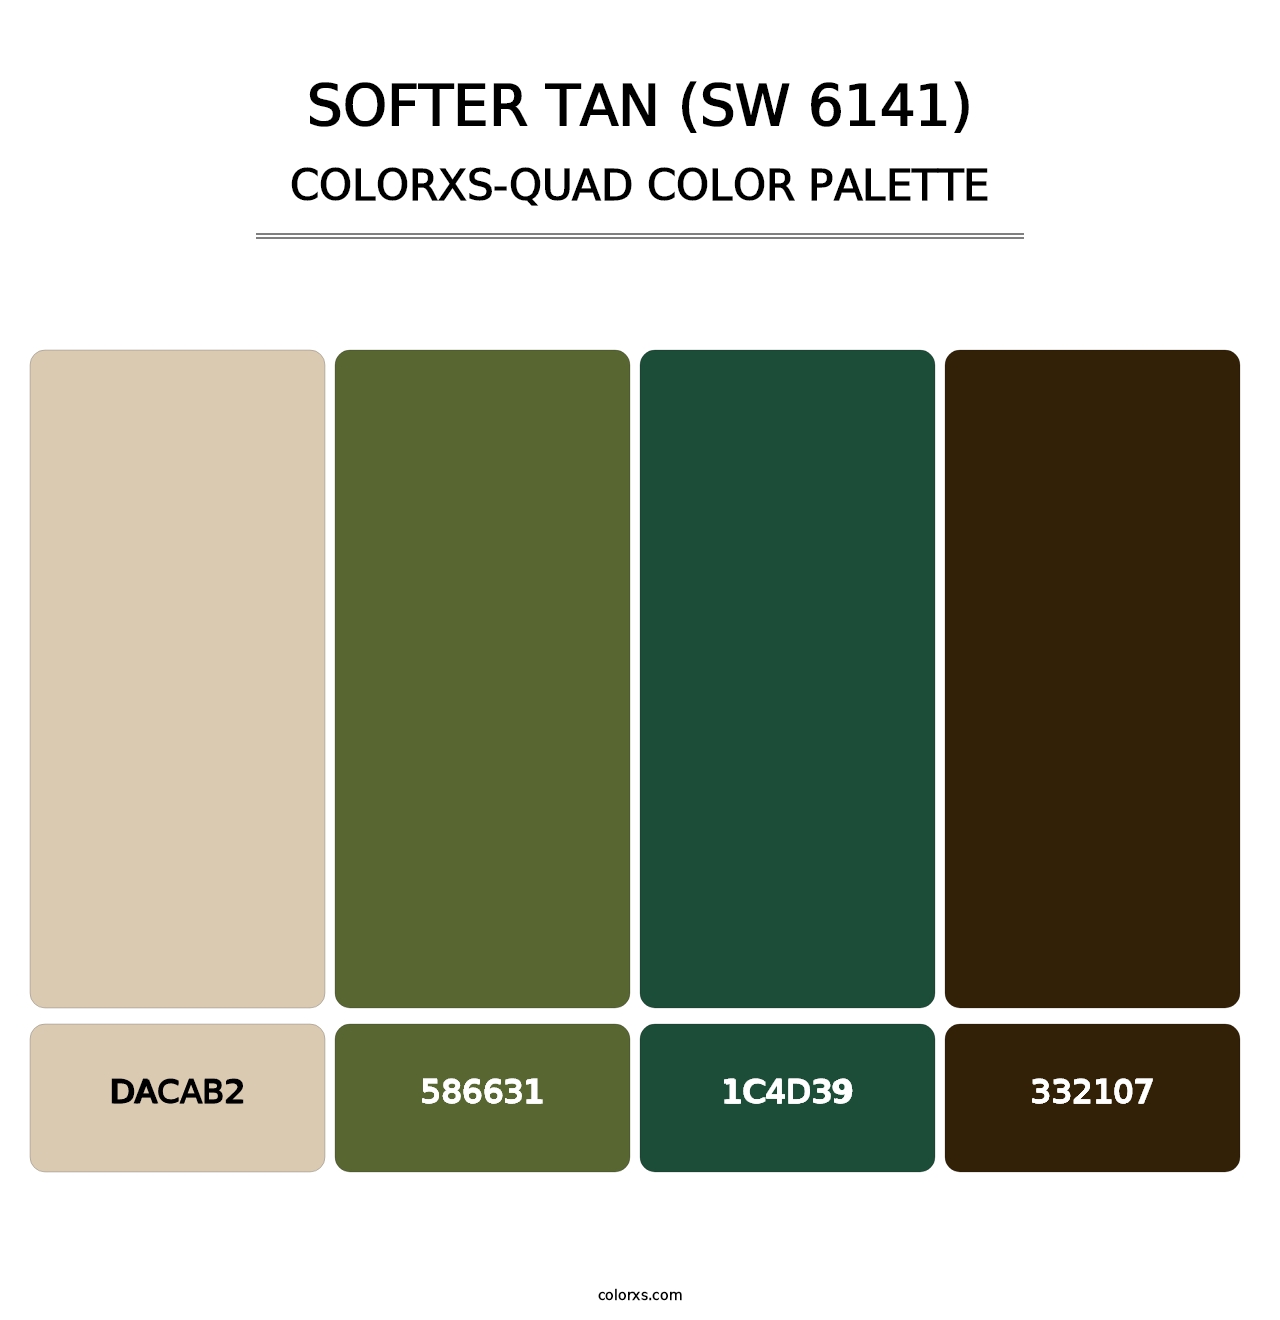 Softer Tan (SW 6141) - Colorxs Quad Palette